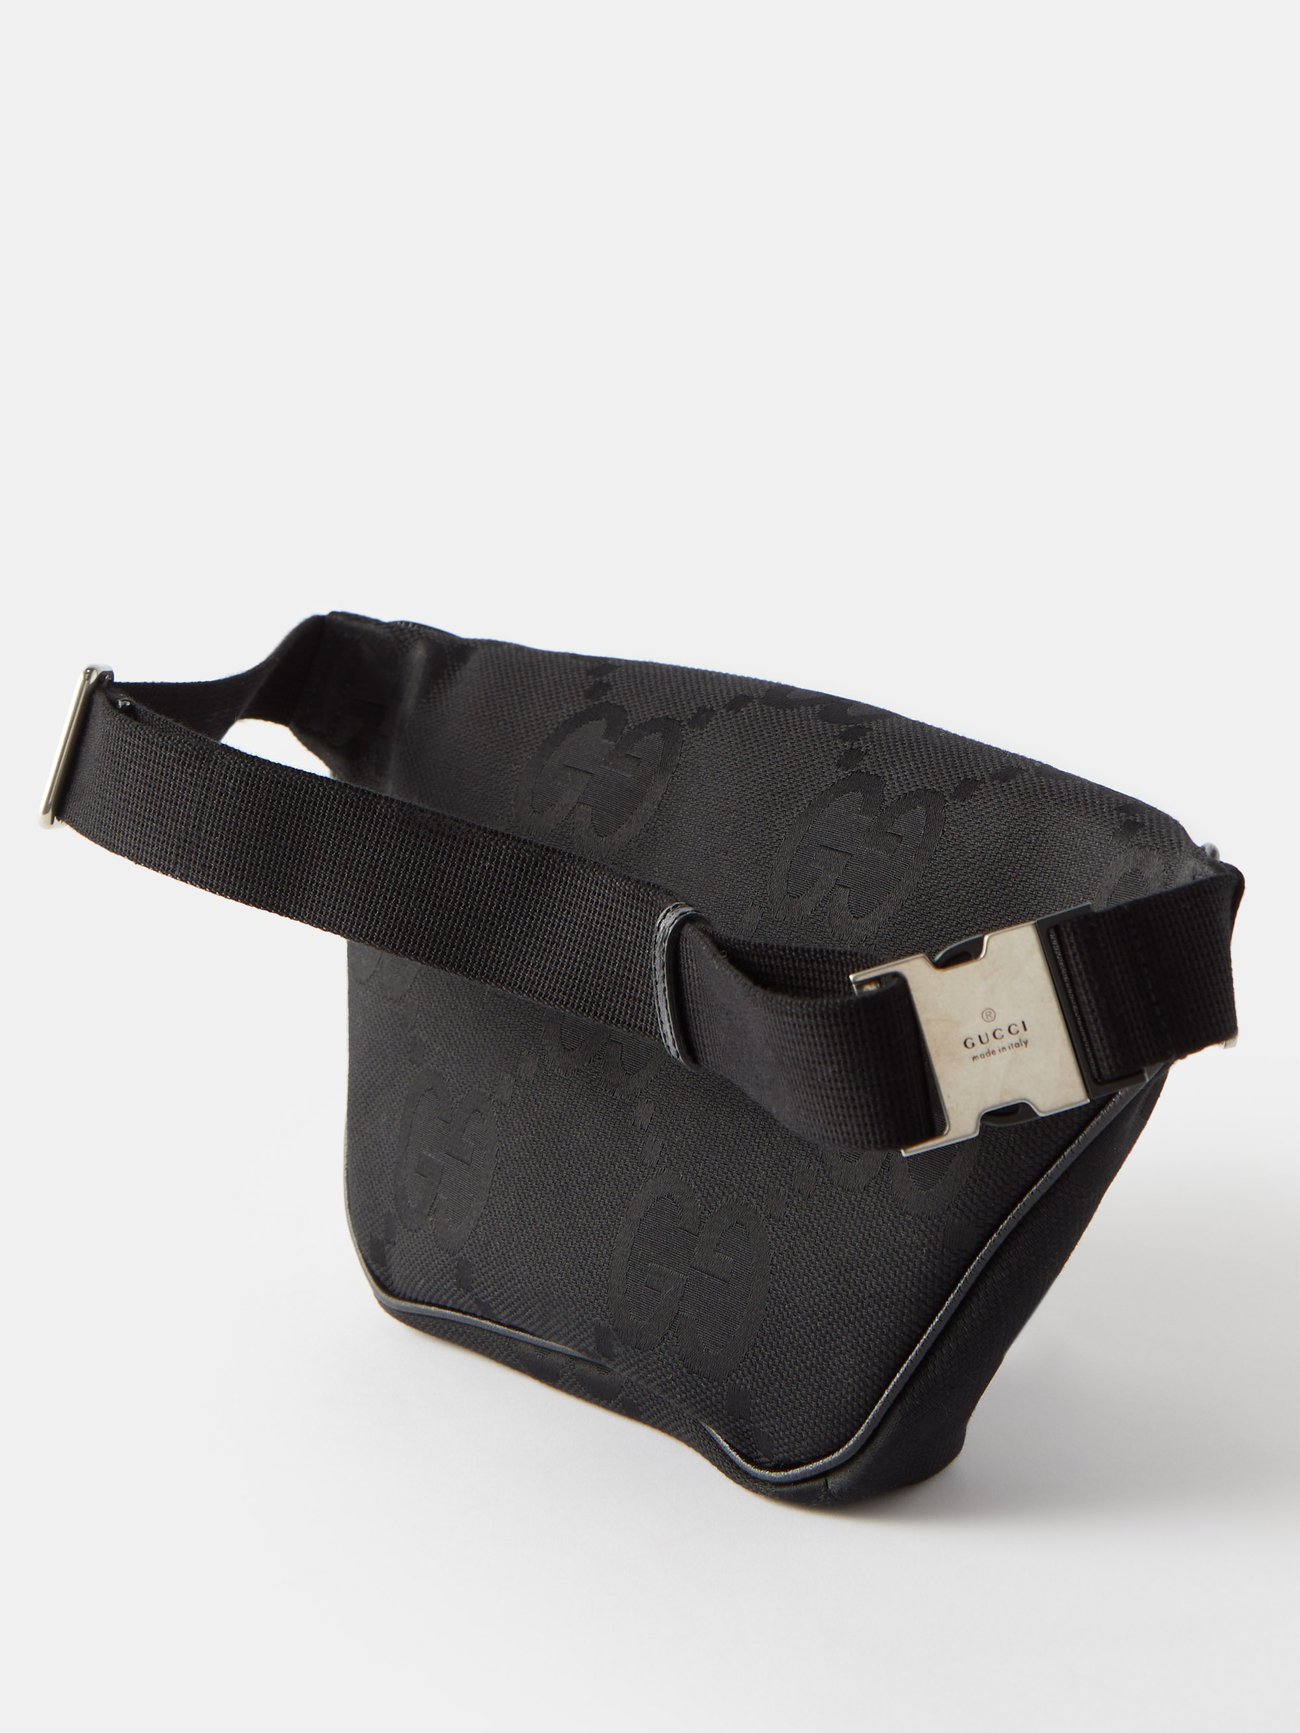 Jumbo GG belt bag in black GG canvas